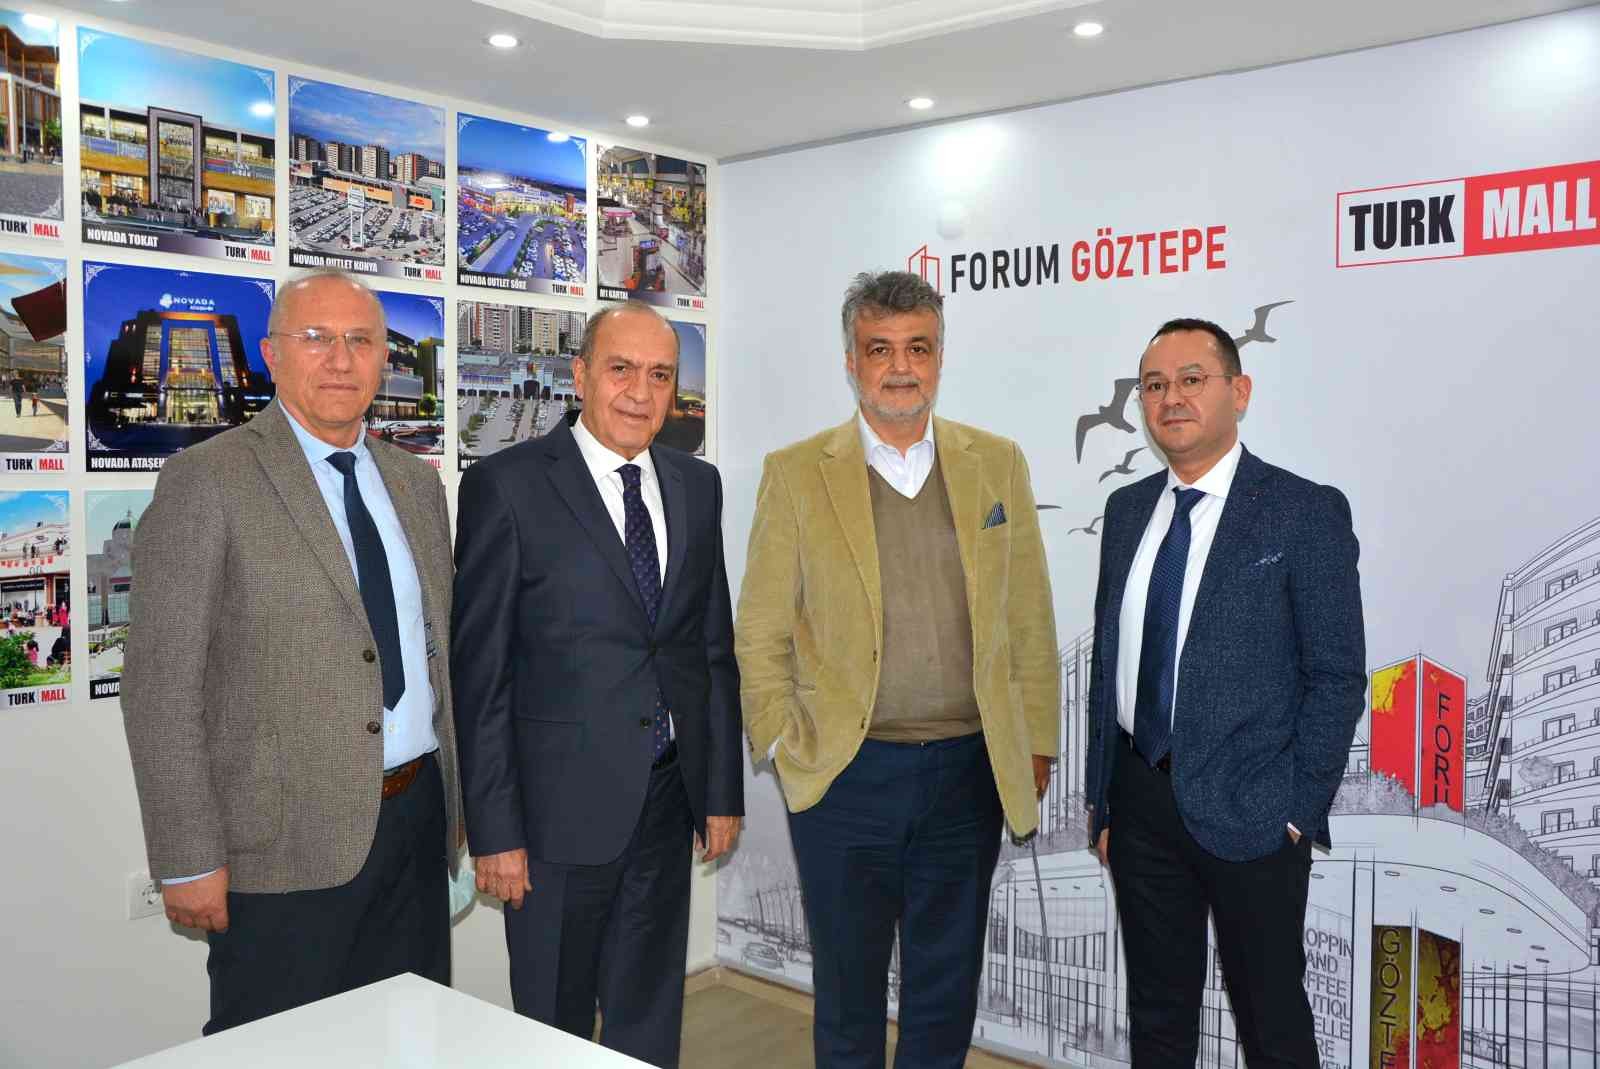 Turkmall’dan İzmir’e dev kentsel dönüşüm yatırımı #izmir